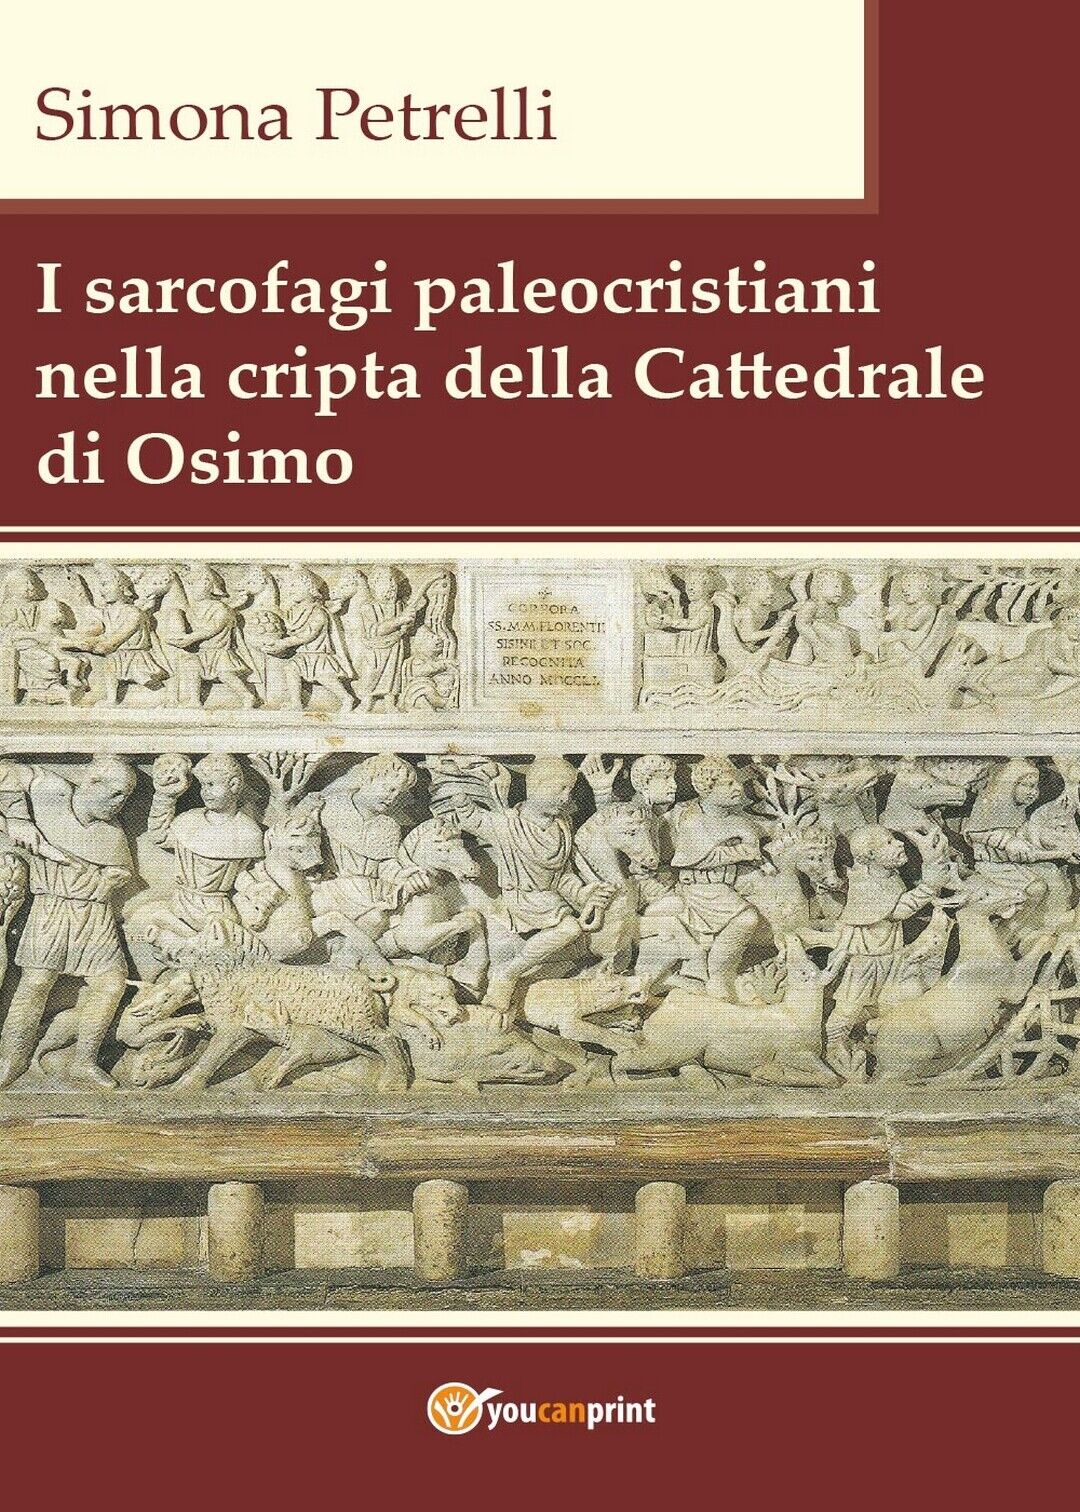 I sarcofagi paleocristiani nella cripta della Cattedrale di Osimo (S. Petrelli)